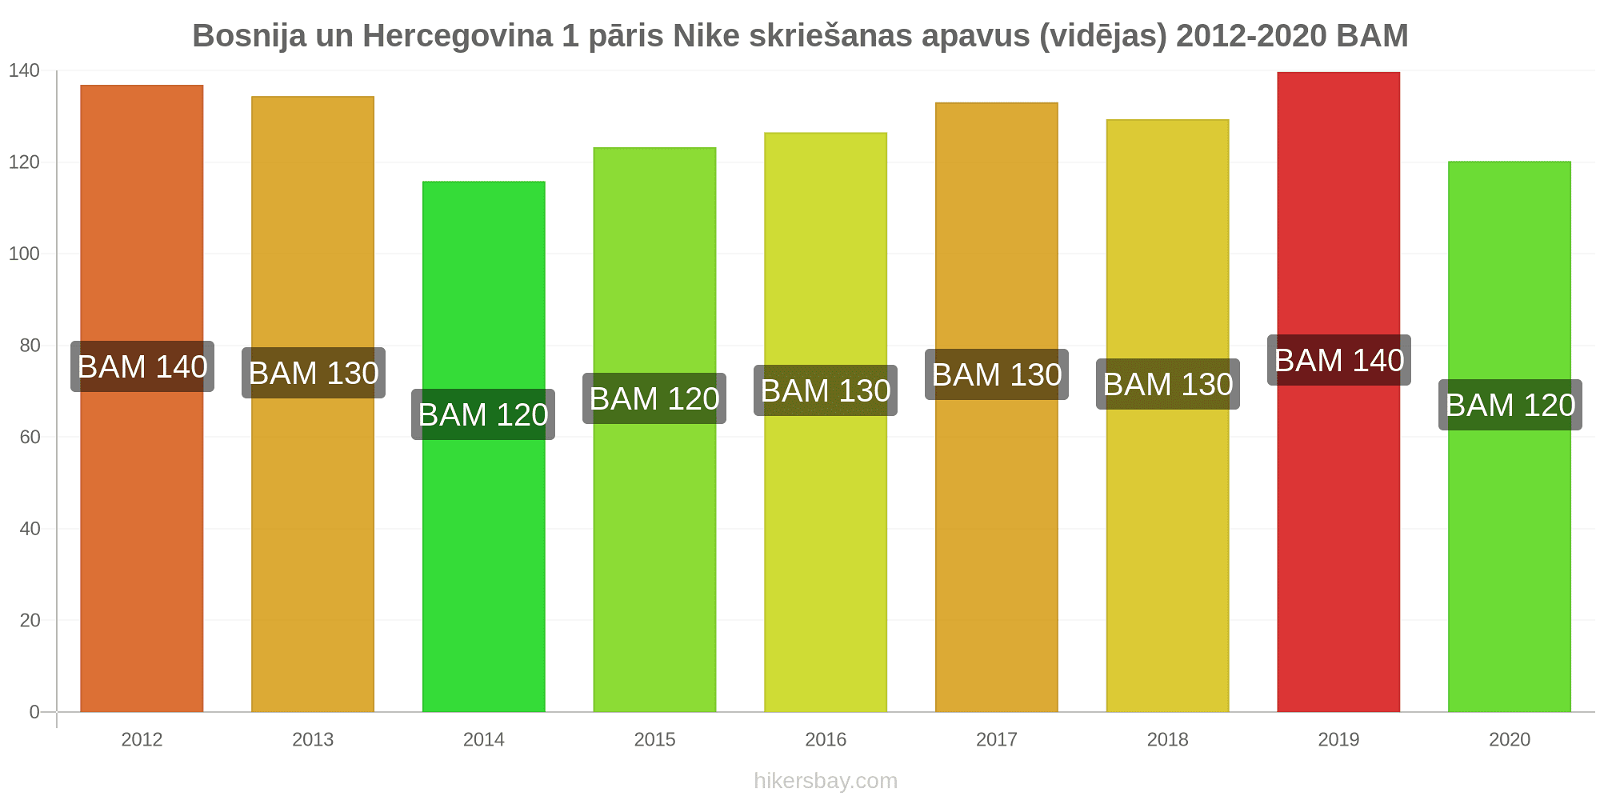 Bosnija un Hercegovina cenu izmaiņas 1 pāris Nike skriešanas apavus (vidējas) hikersbay.com